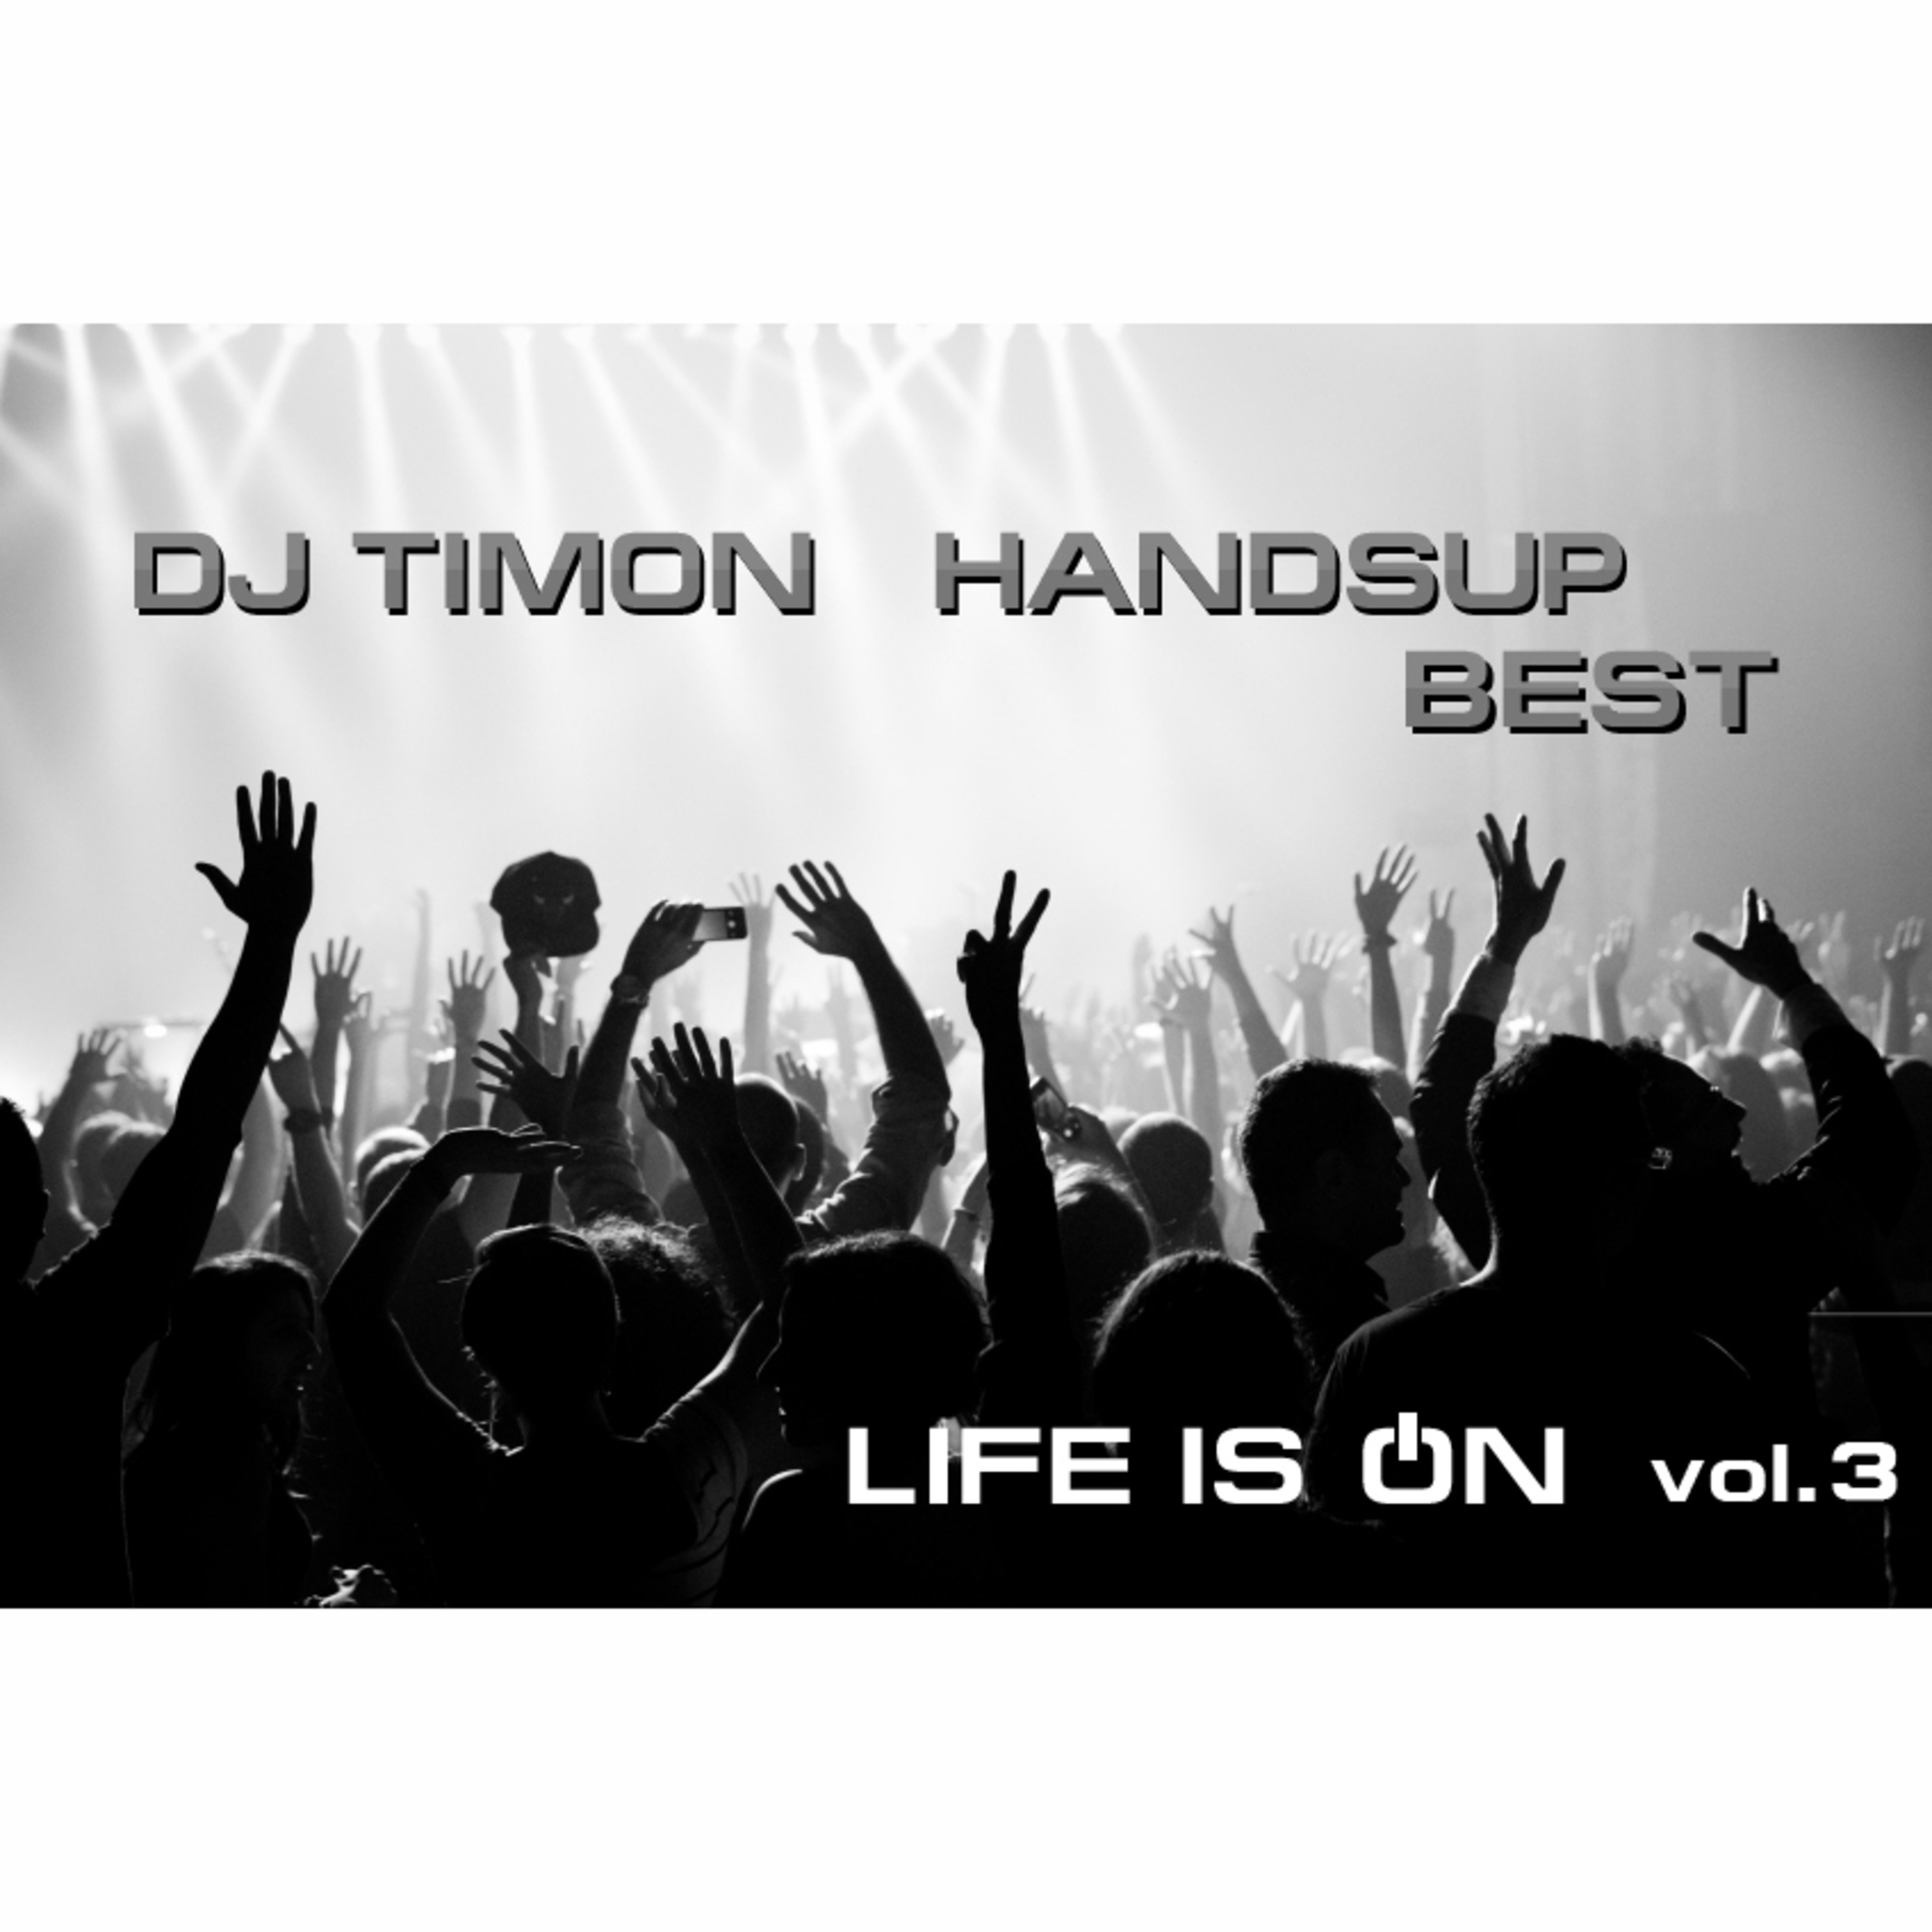 Hands Up Best vol.3